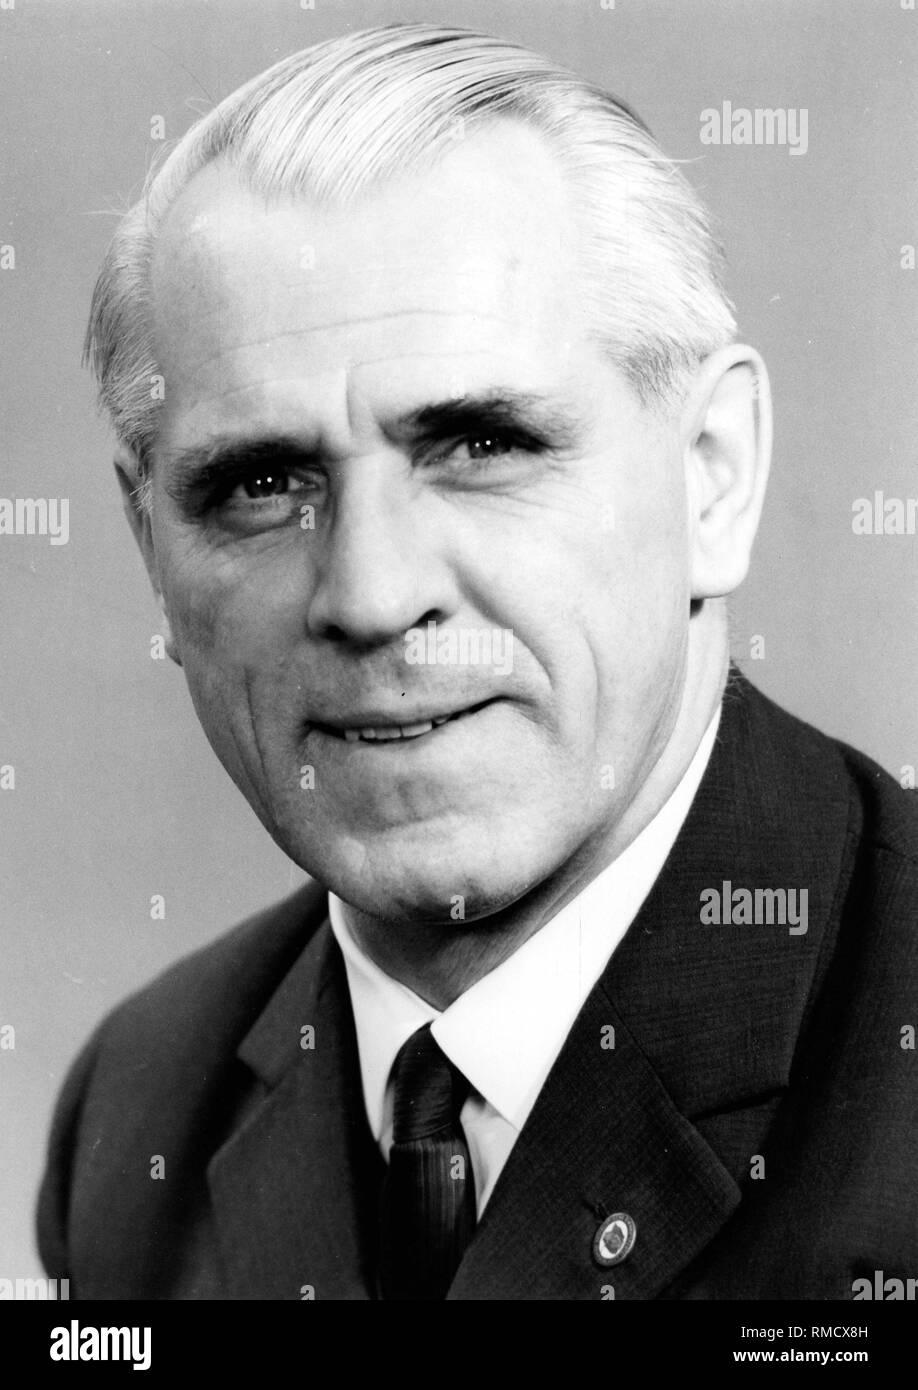 Willi Stoph, (09.07.1914 - 13.04.1999), zwischen 1953 - 1989 Mitglied des SED-Politbüros, zwischen 1956 - 1960 DDR-Minister der Verteidigung, von 1964 - 1973 Ministerpräsident der DDR, die zwischen 1973 - 1976 DDR-Vorsitzende von 1976 - 1989 Ministerpräsident der DDR an. Stockfoto